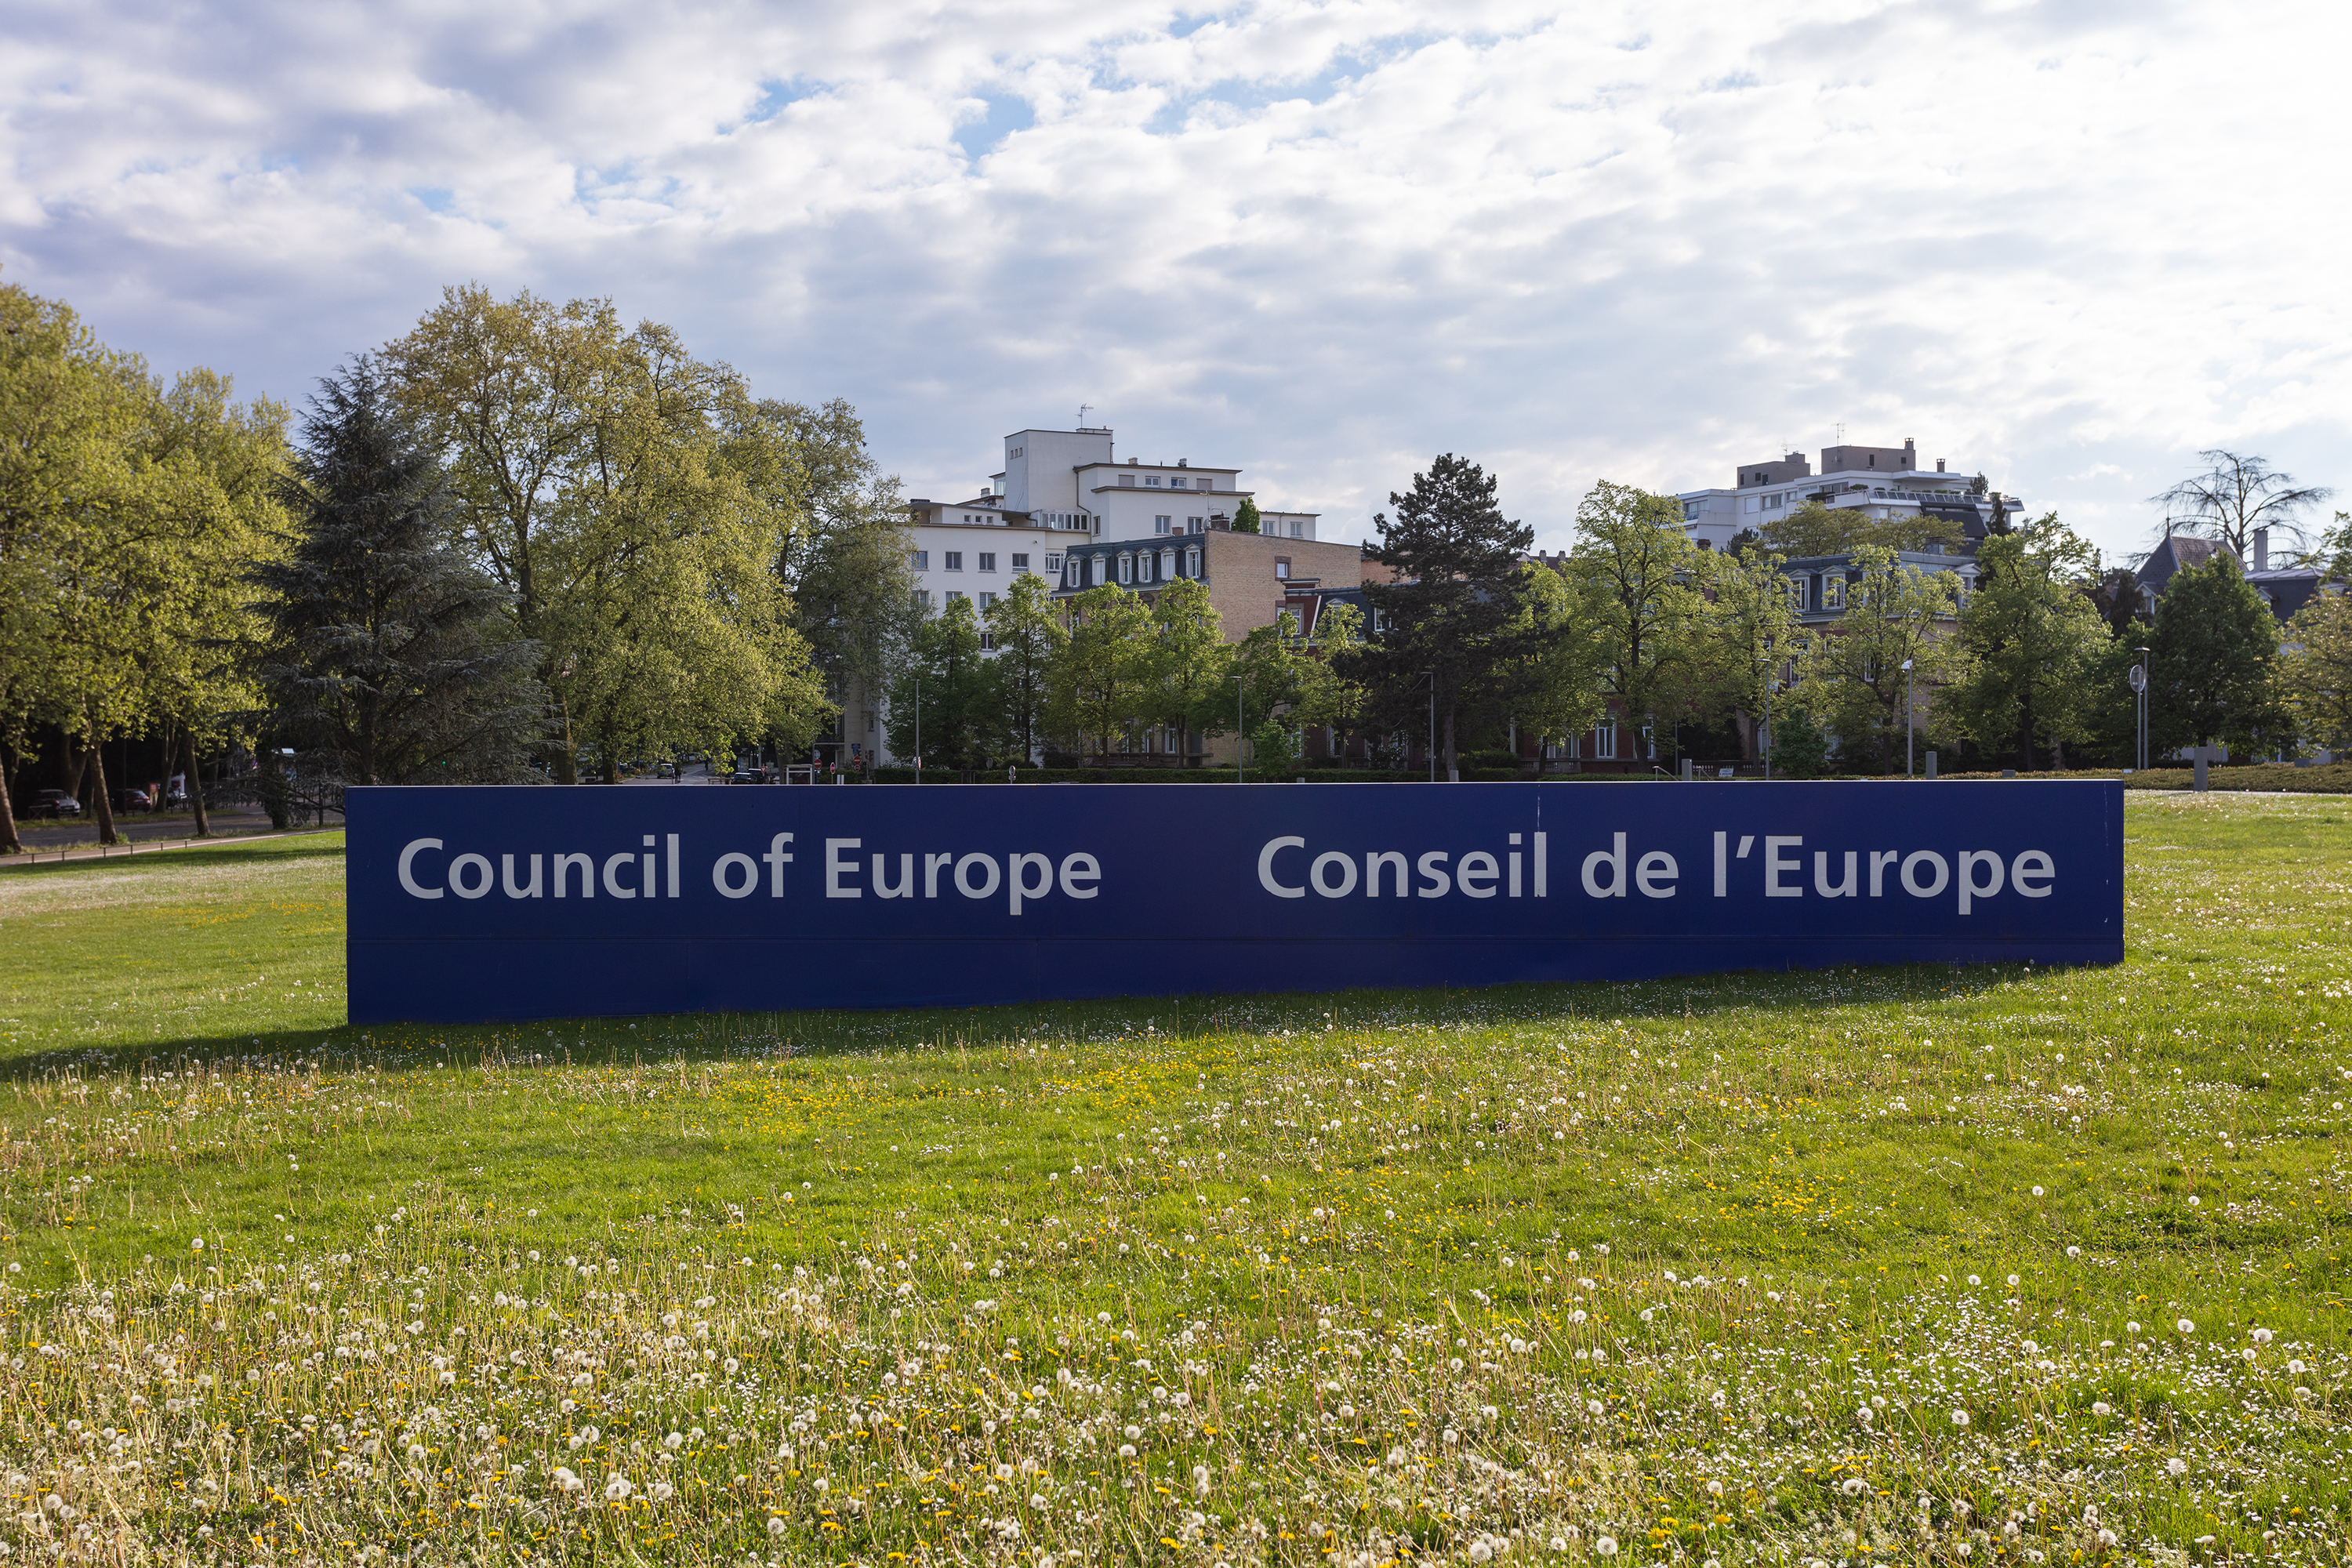 Grosses Schild auf Rasenfläche mit Aufschrift "Council of Europe, Conseil de l'Europe"